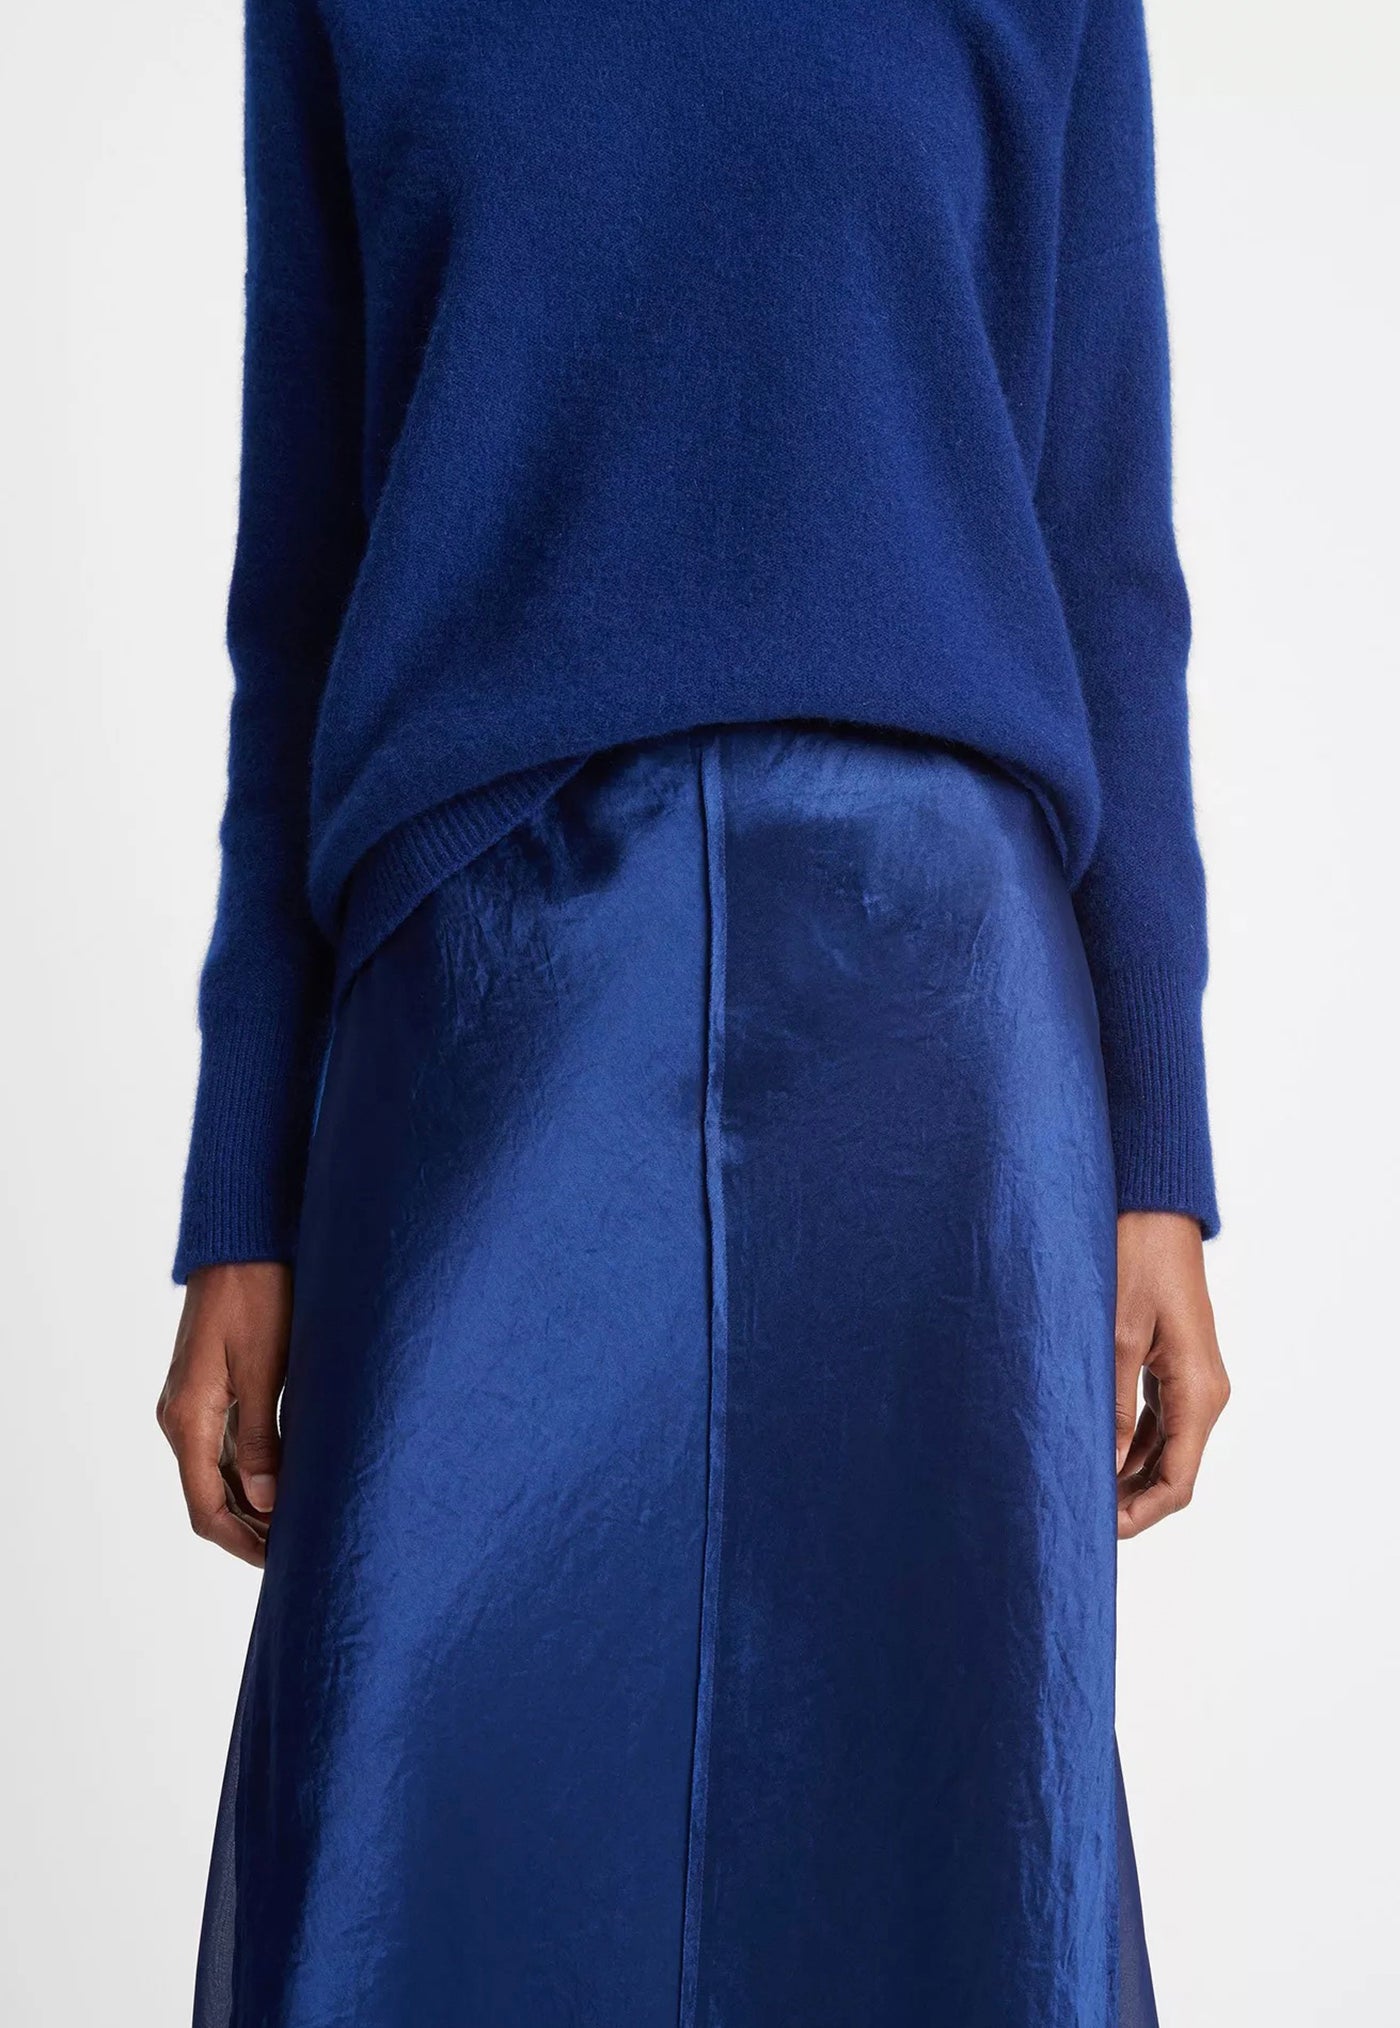 Sheer Panelled Slip Skirt - Caspian sold by Angel Divine